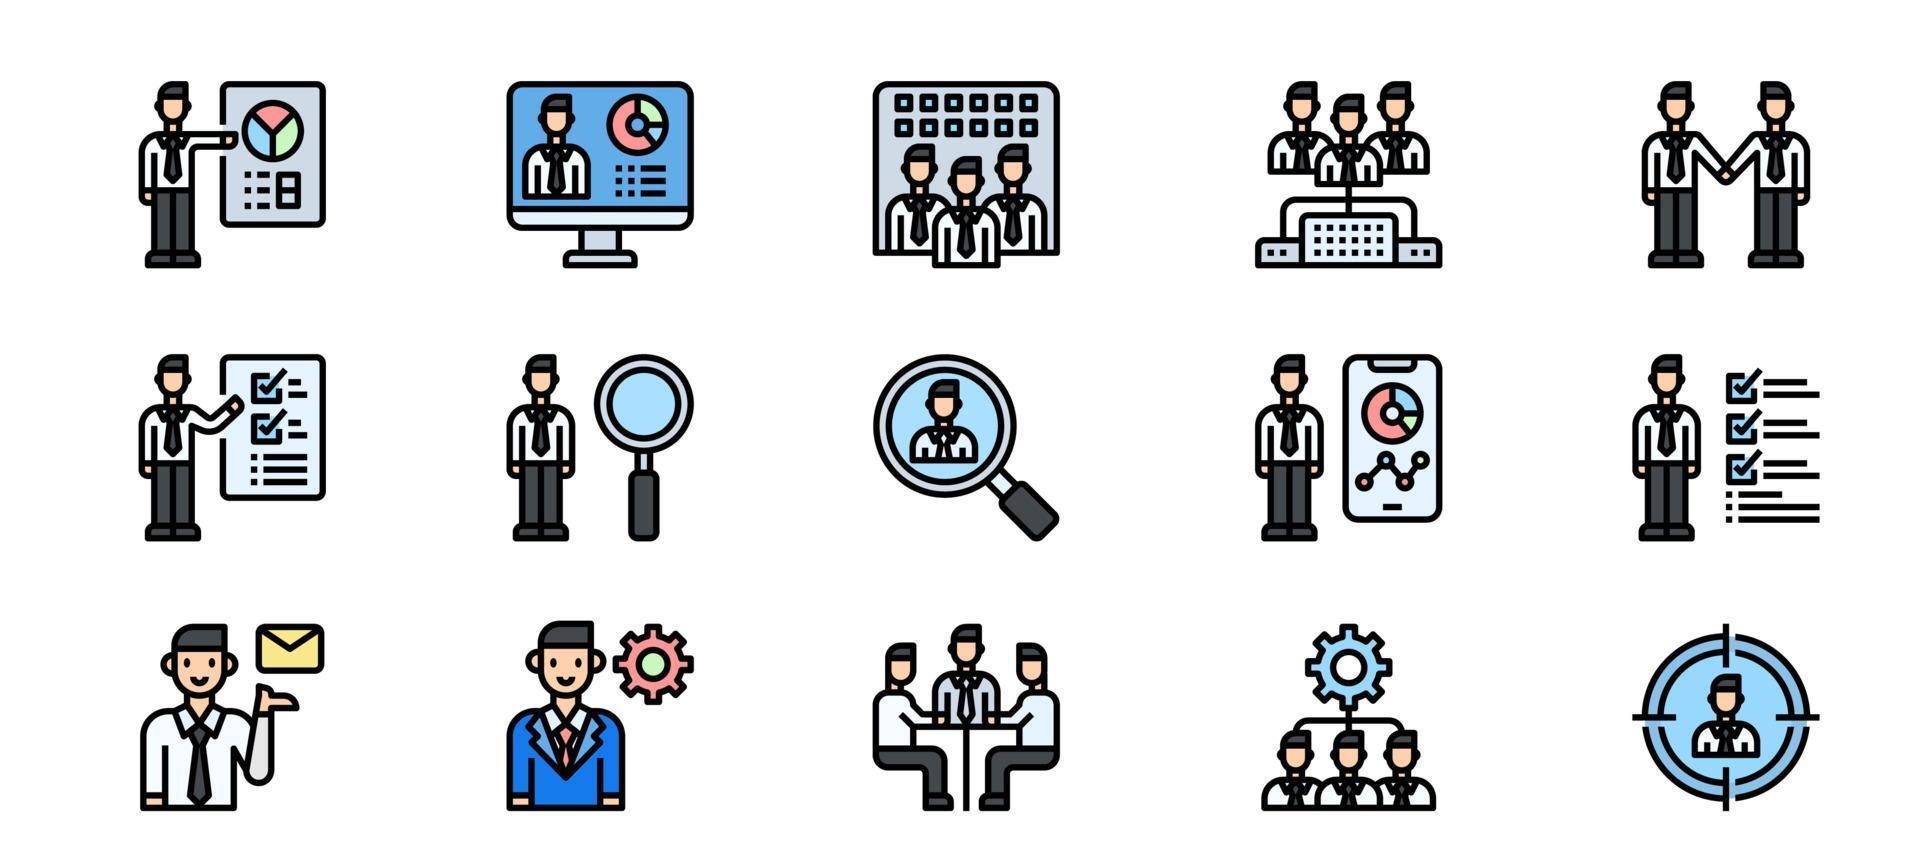 ilustração em vetor ícone de reunião, negócios, conhecer, trabalho em equipe